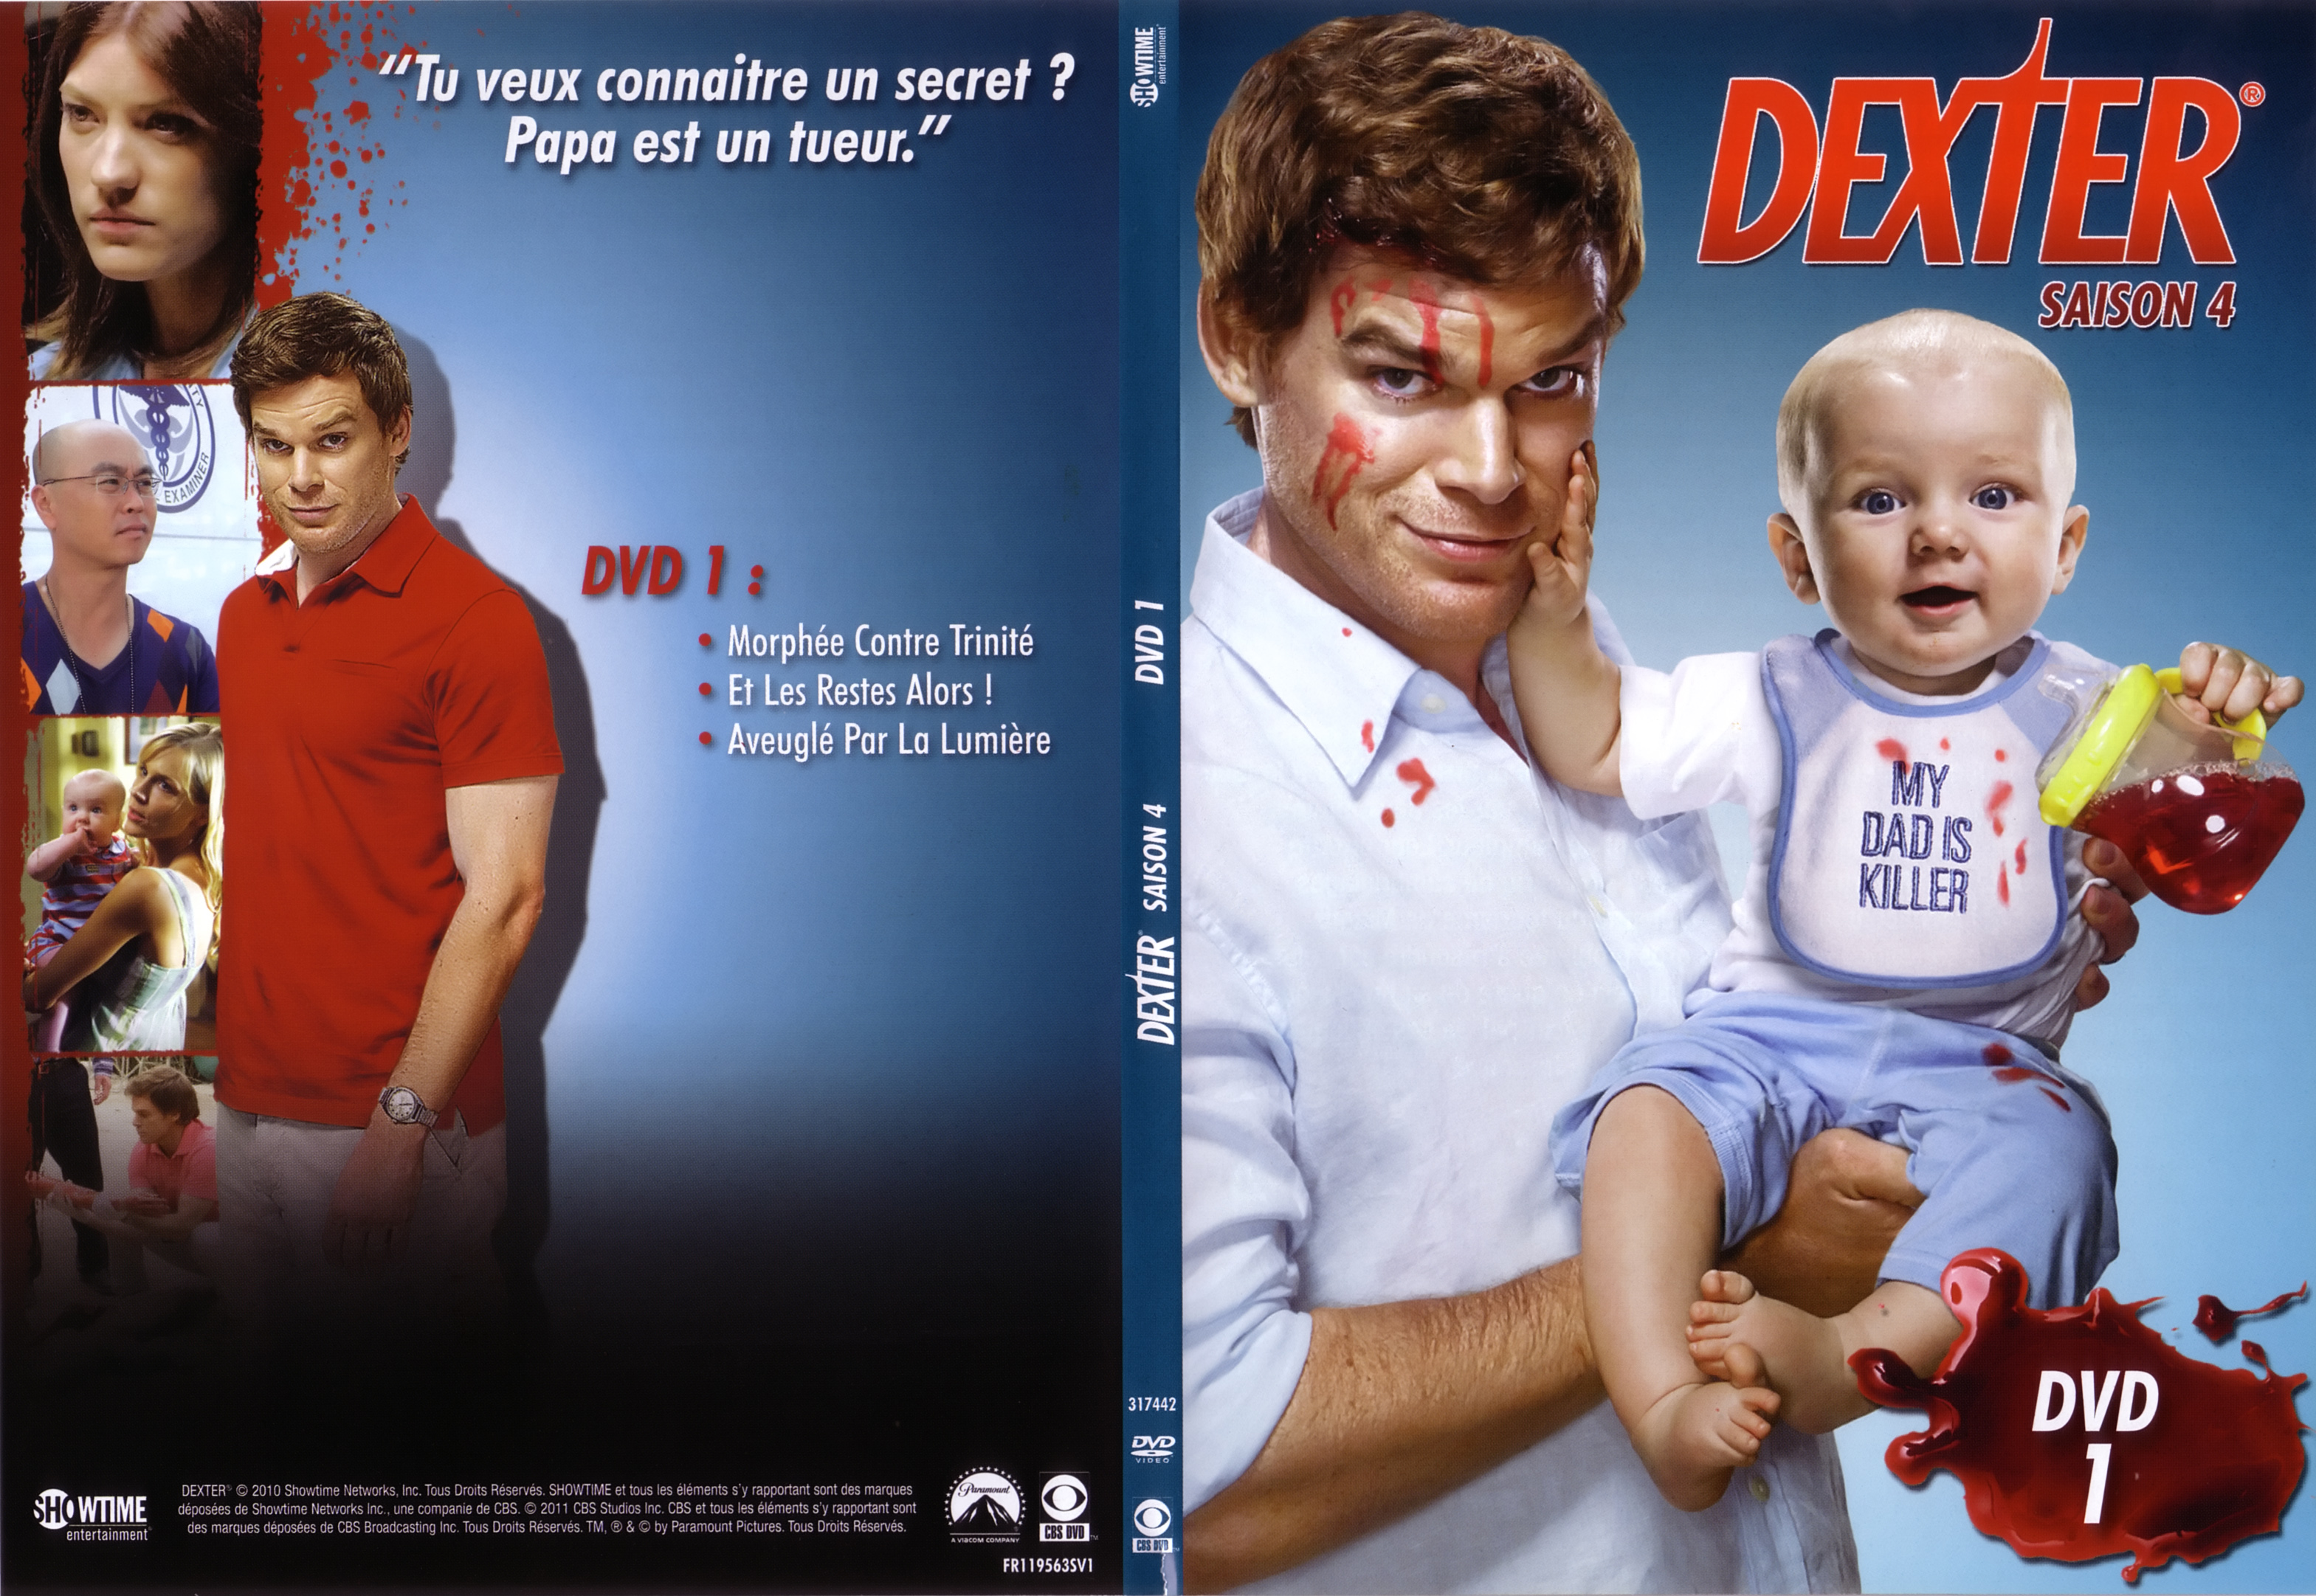 Jaquette DVD Dexter Saison 4 DVD 1